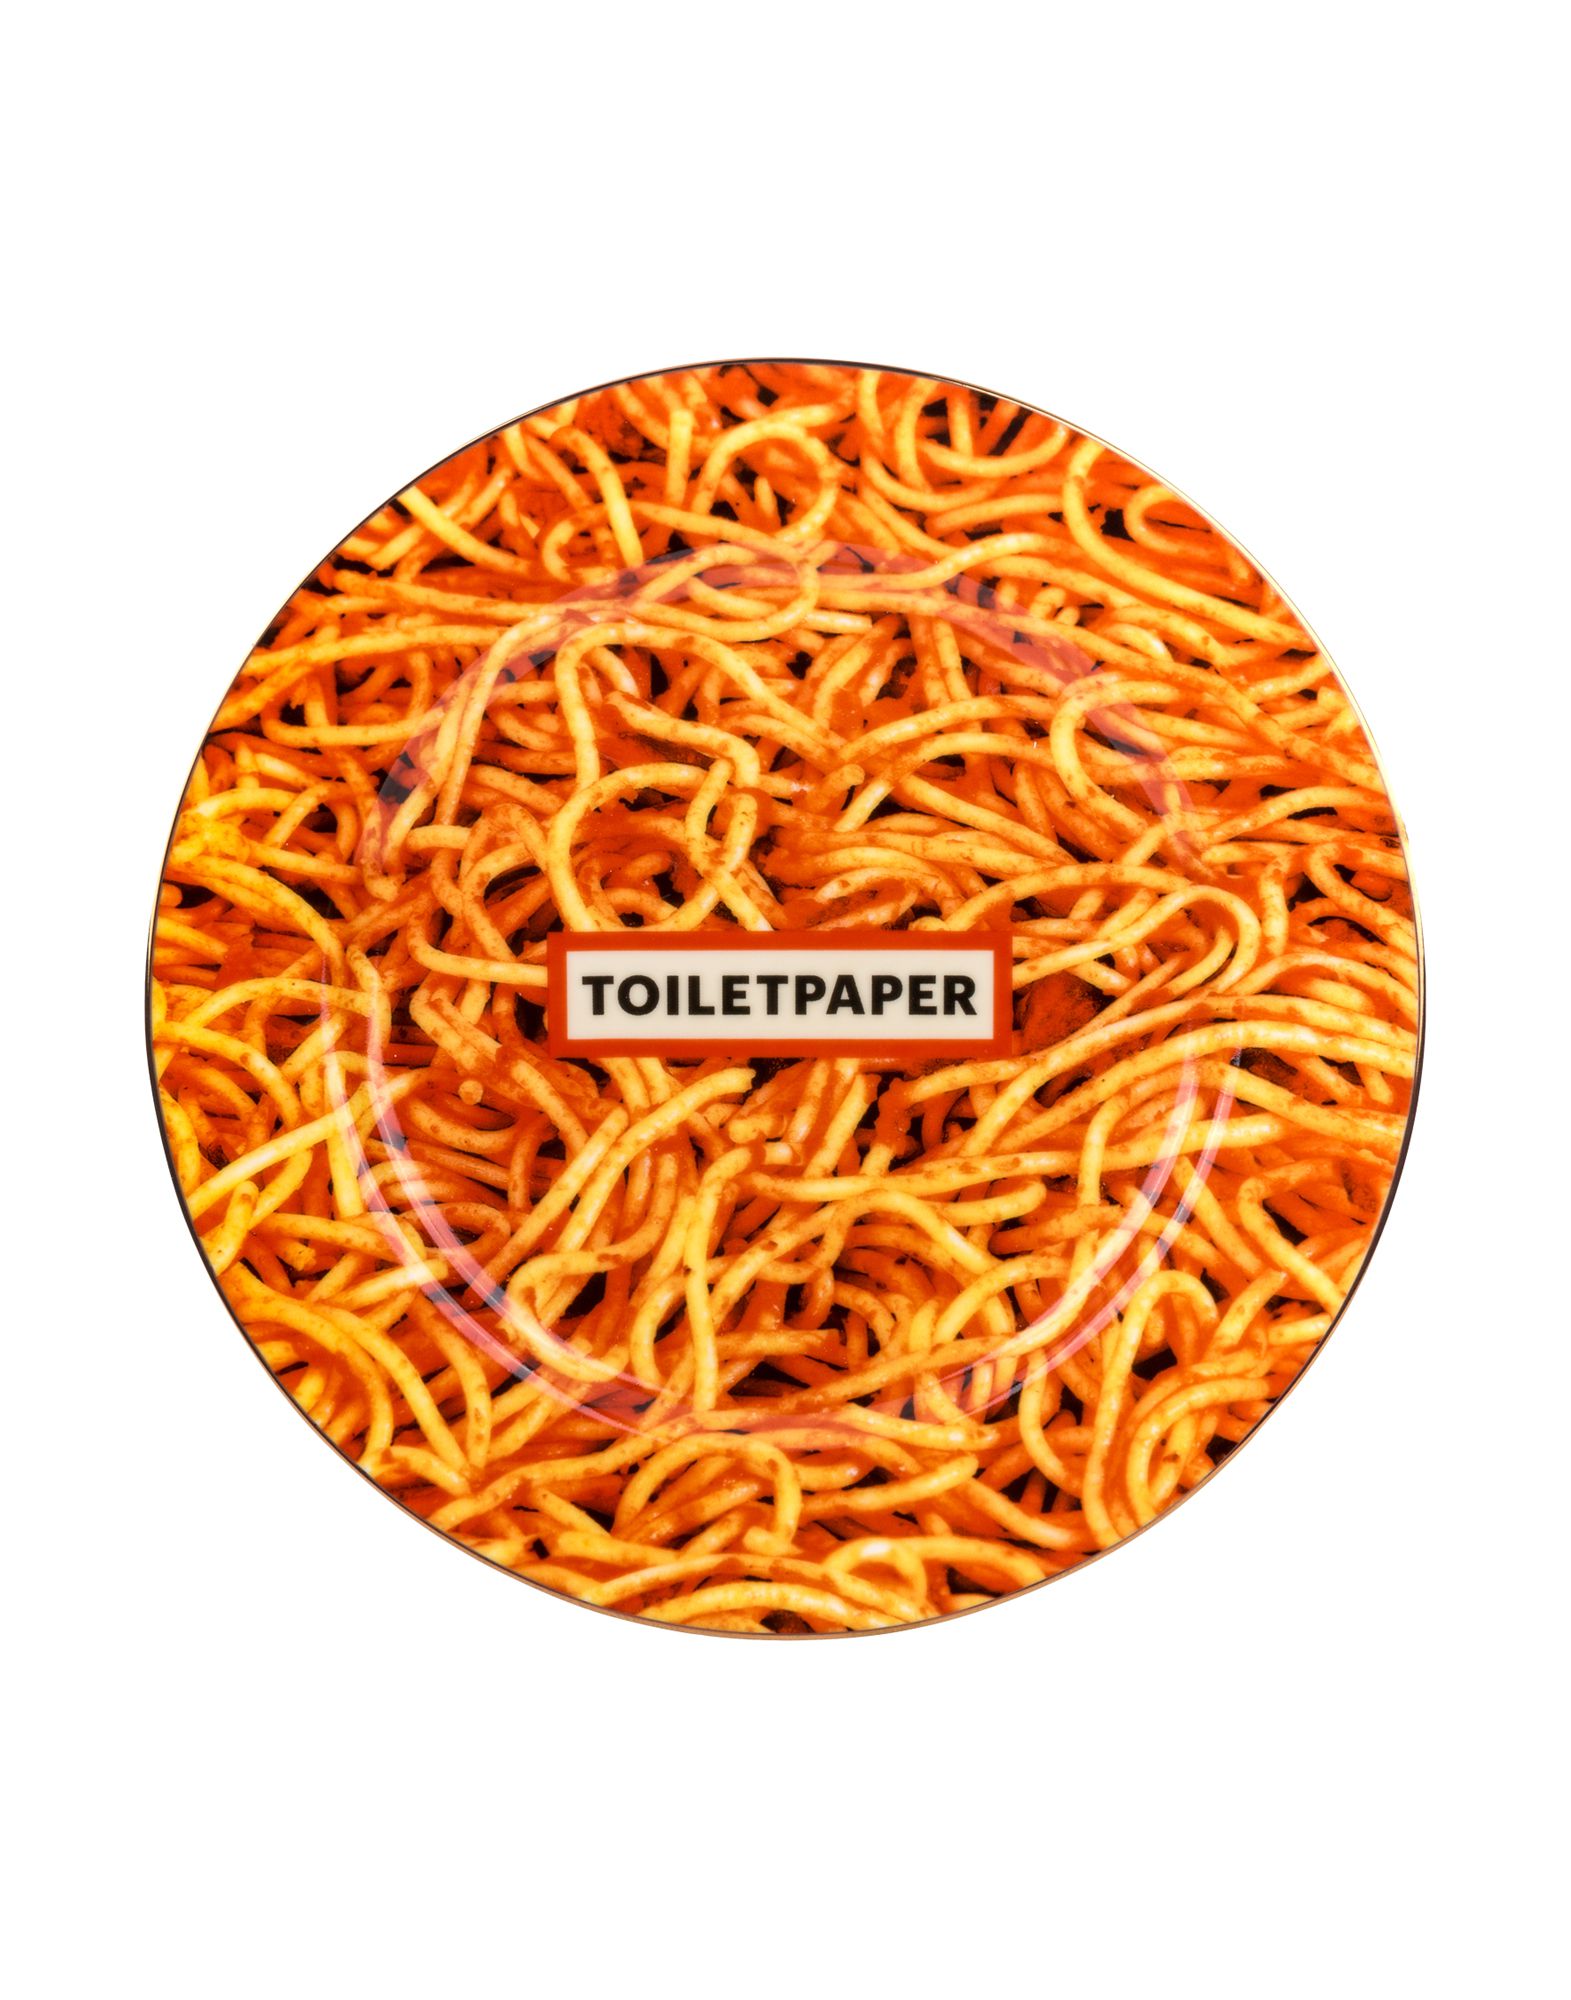 《送料無料》SELETTI WEARS TOILETPAPER Unisex オーナメンタルプレート オレンジ セラミック 100% Spaghetti